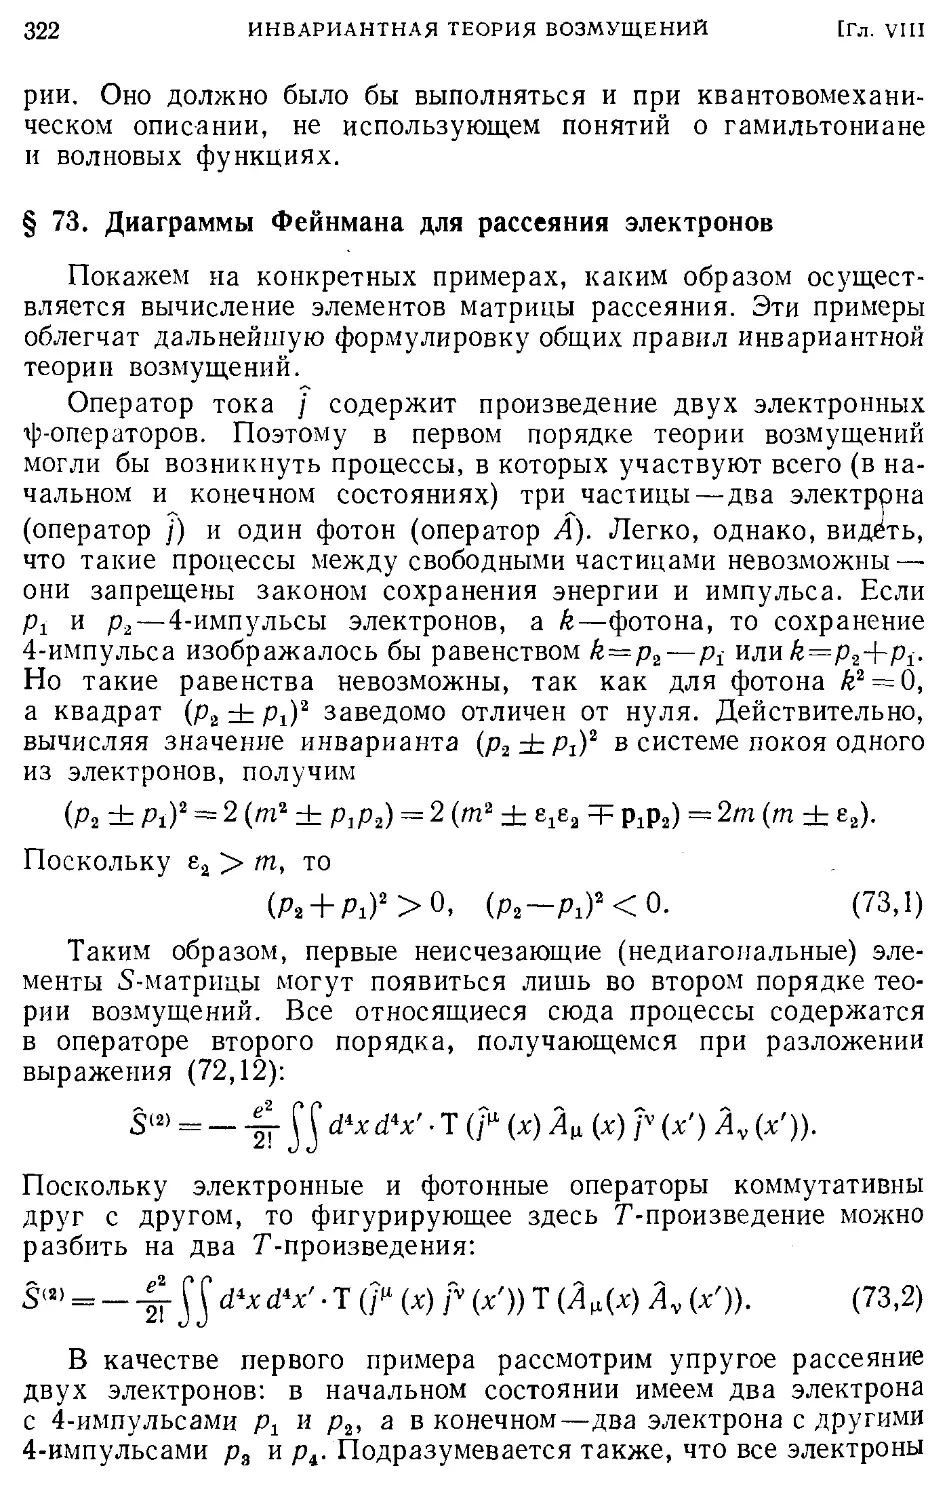 § 73. Диаграммы Фейнмана для рассеяния электронов